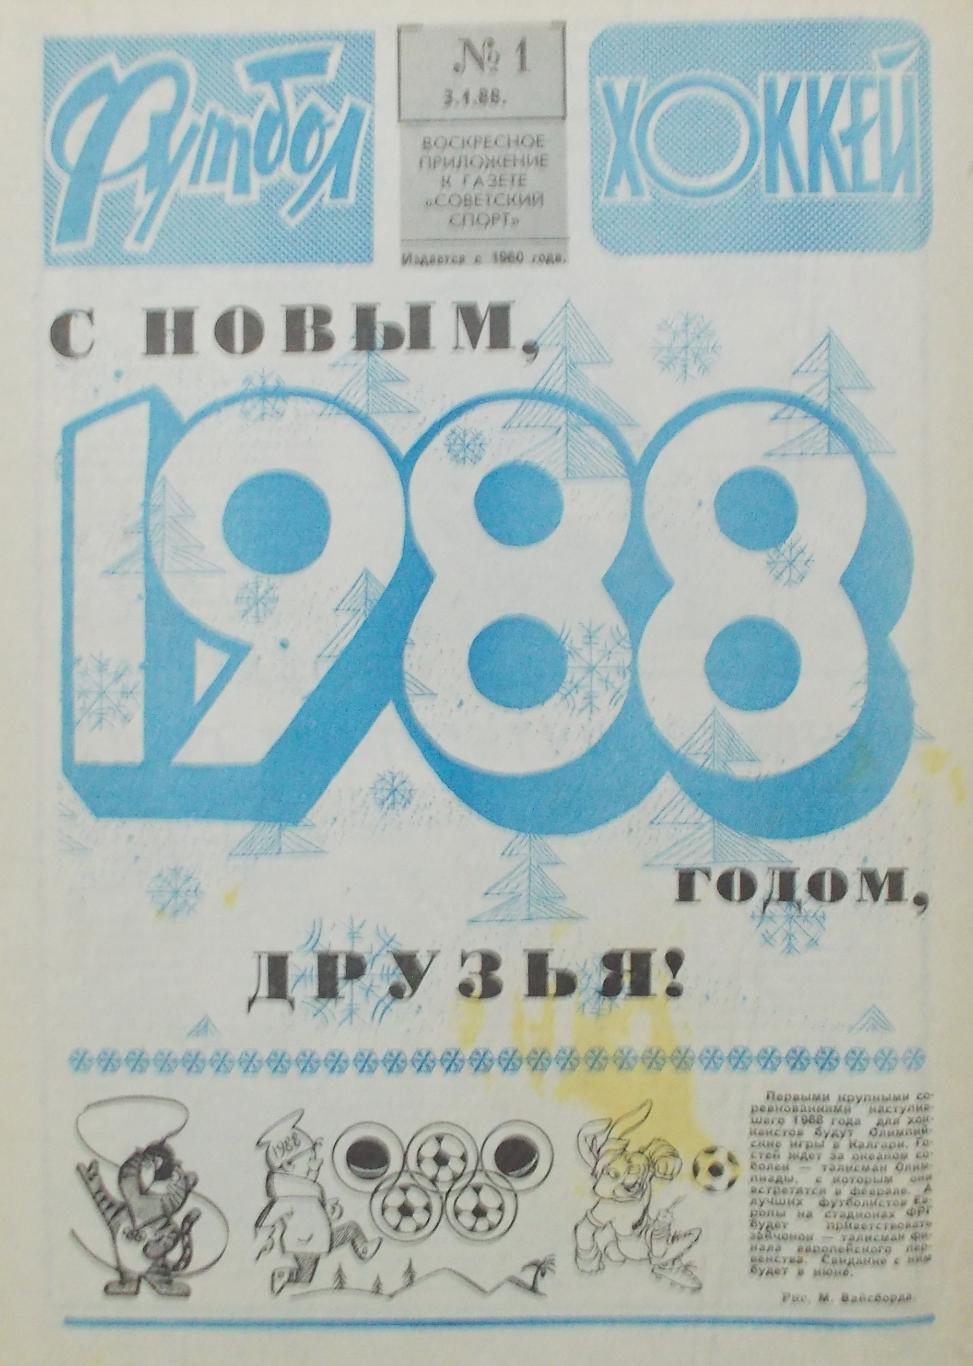 Еженедельник Футбол-Хоккей, полный комплект, 1988 год.